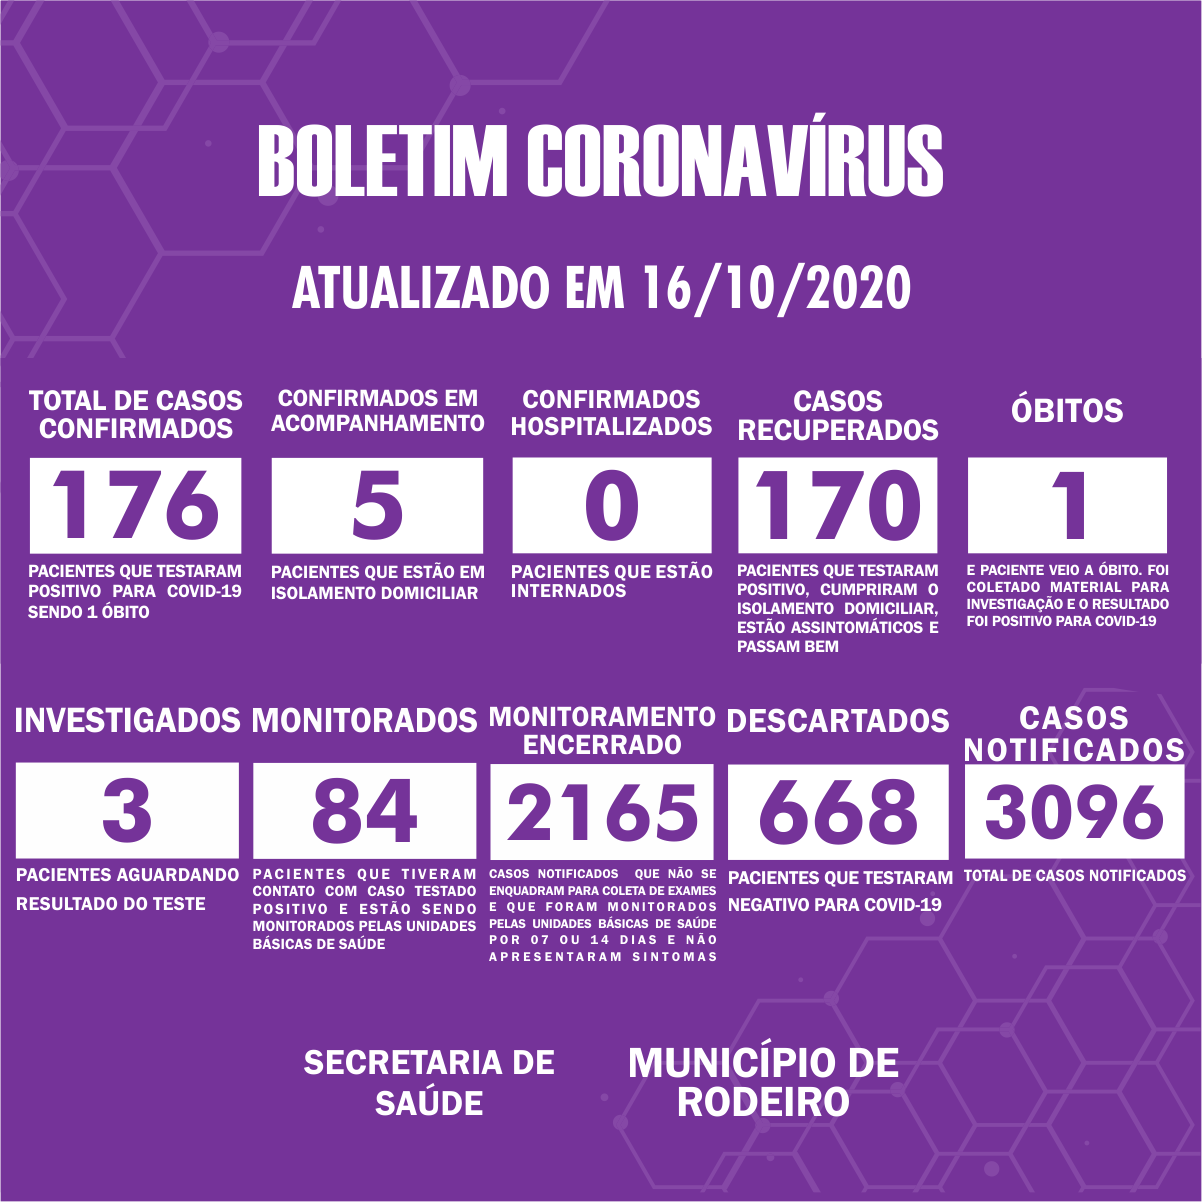 Boletim Epidemiológico do Município de Rodeiro sobre coronavírus, atualizado em 16/10/2020